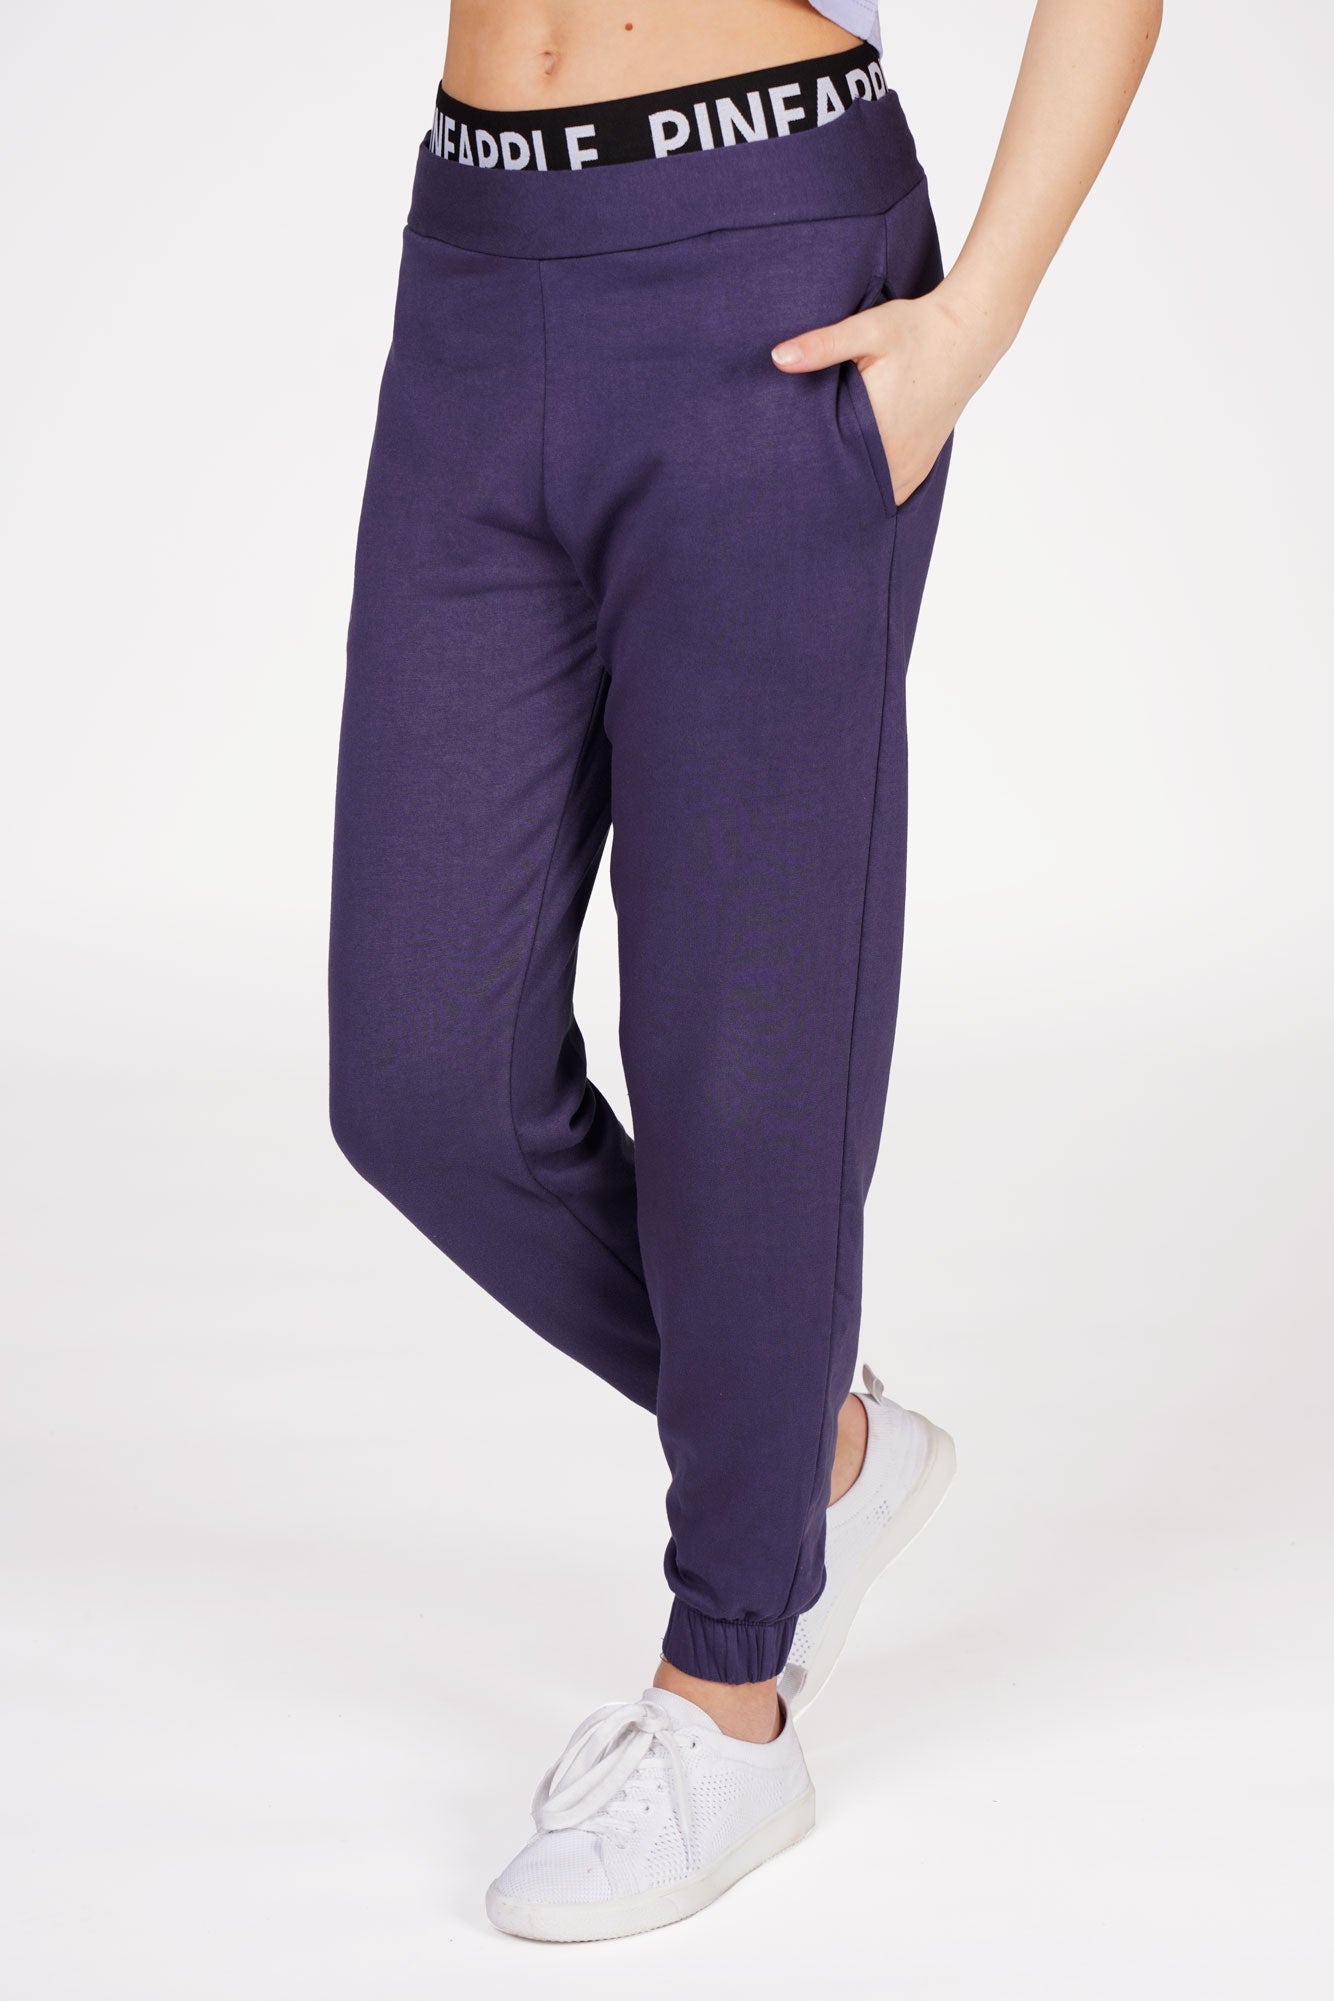 Buy Track Pants For Kids Girls online | Lazada.com.ph